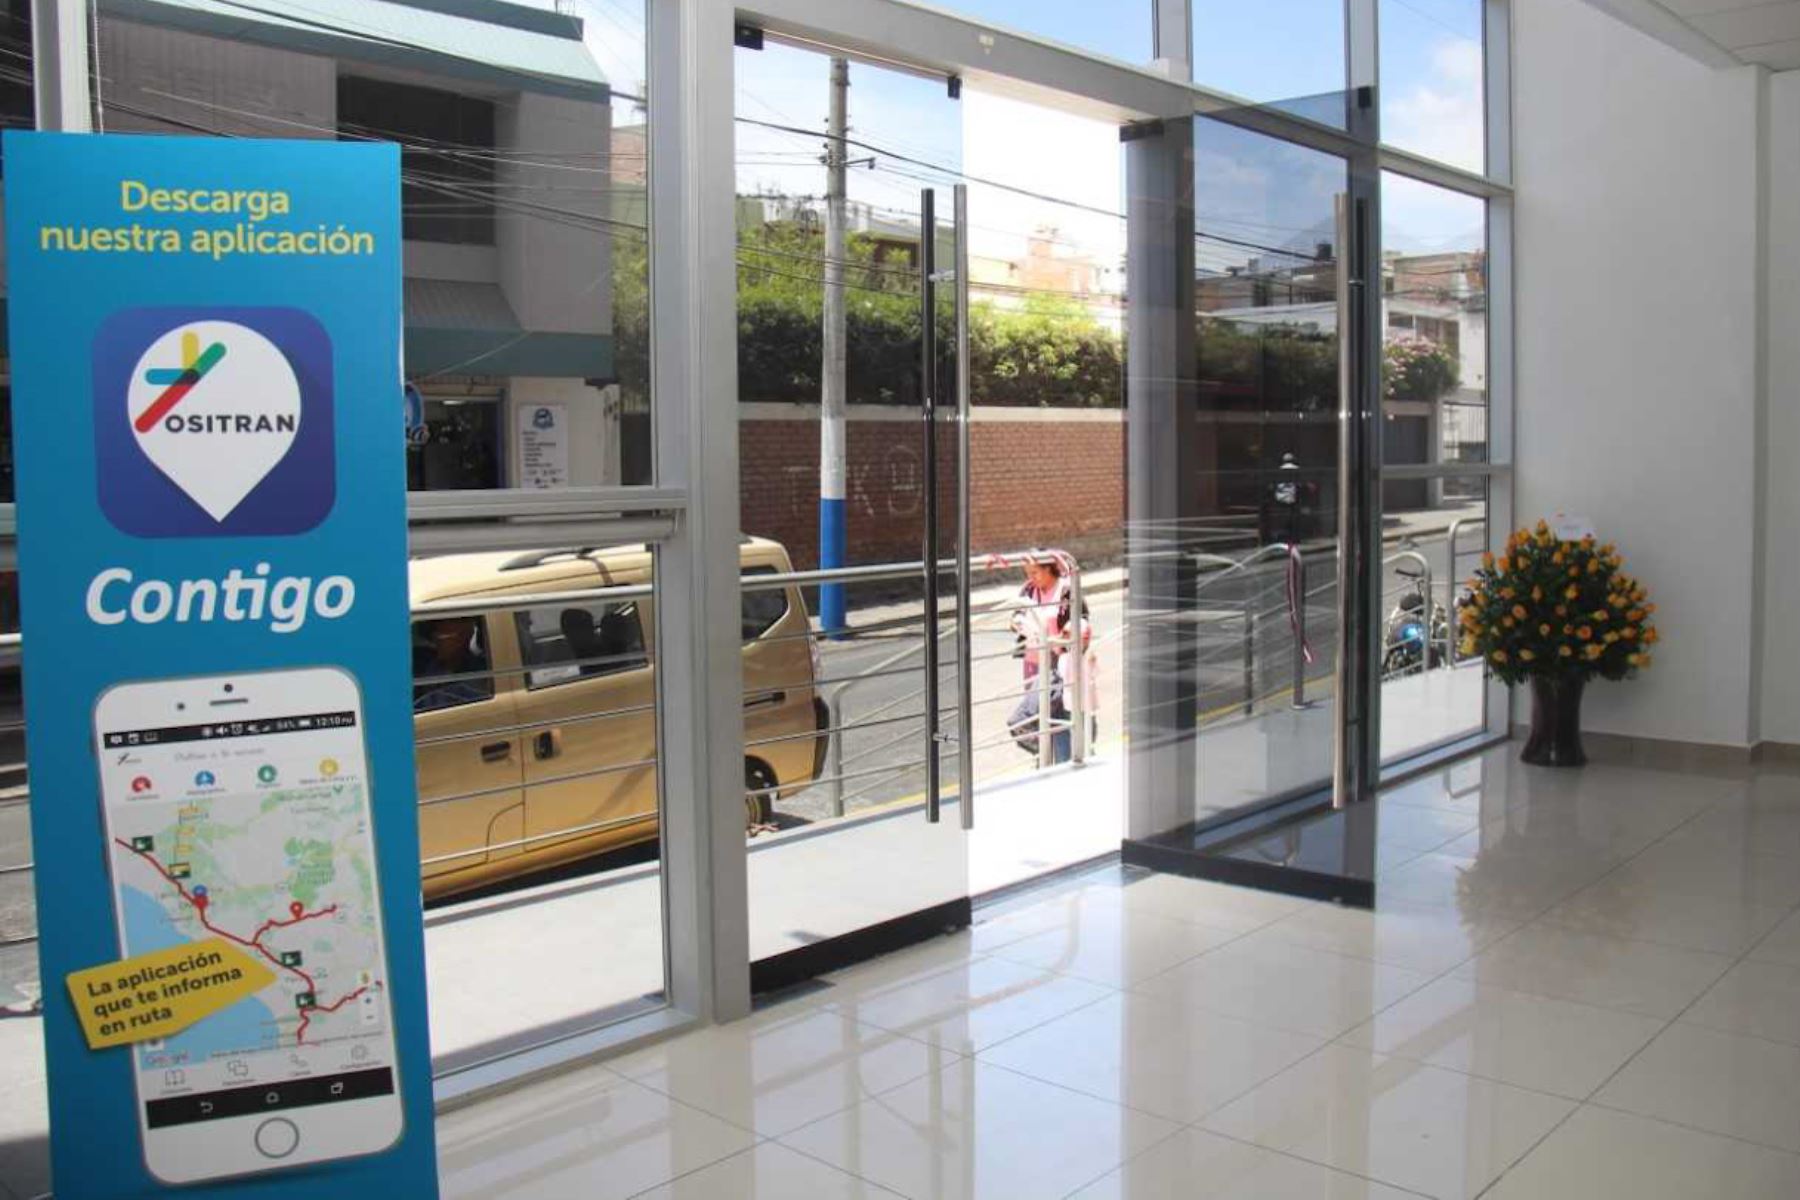 Ositran atiende a usuarios en su nueva oficina descentralizada en Arequipa